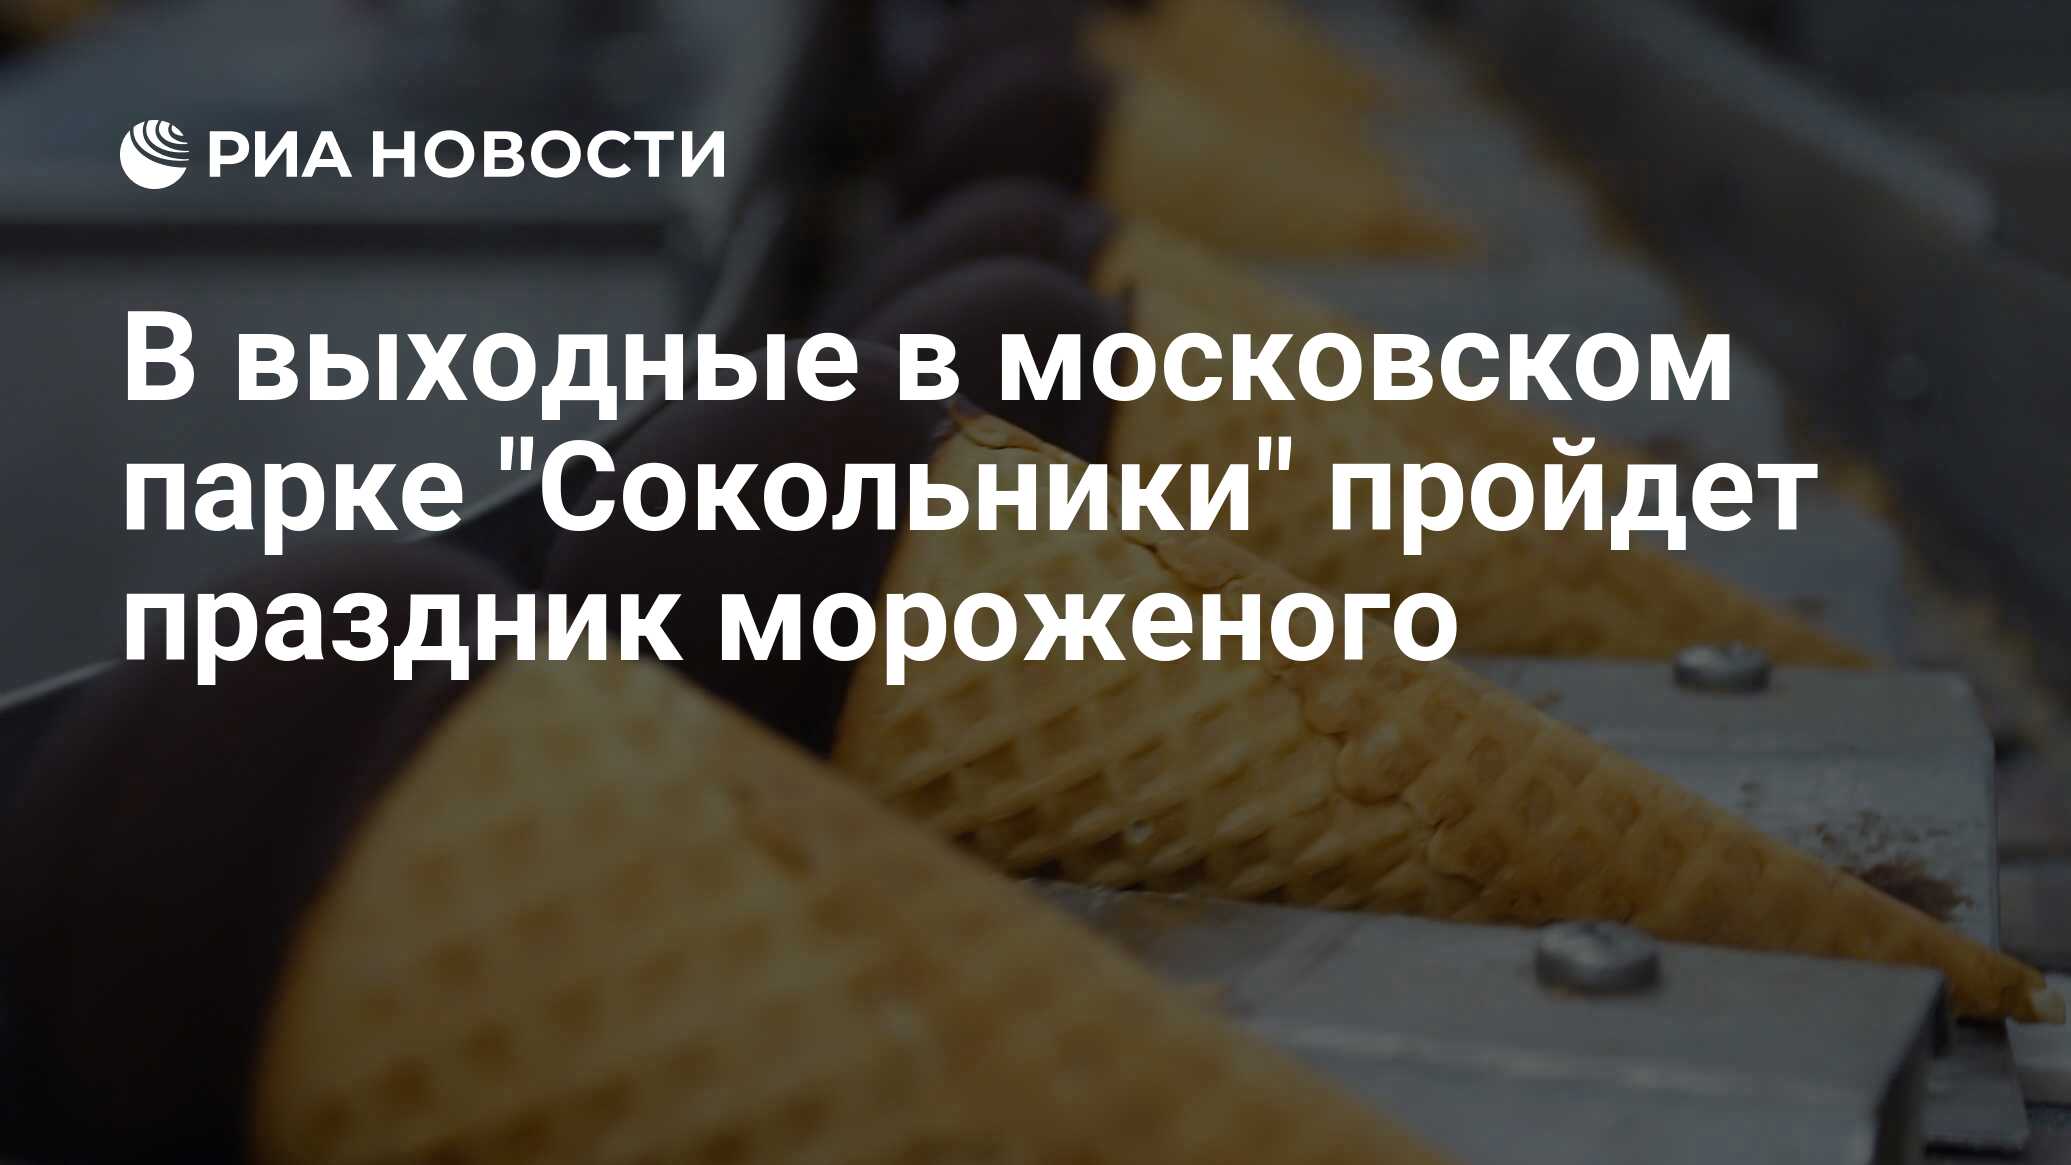 Самые вкусные производители мороженого в России